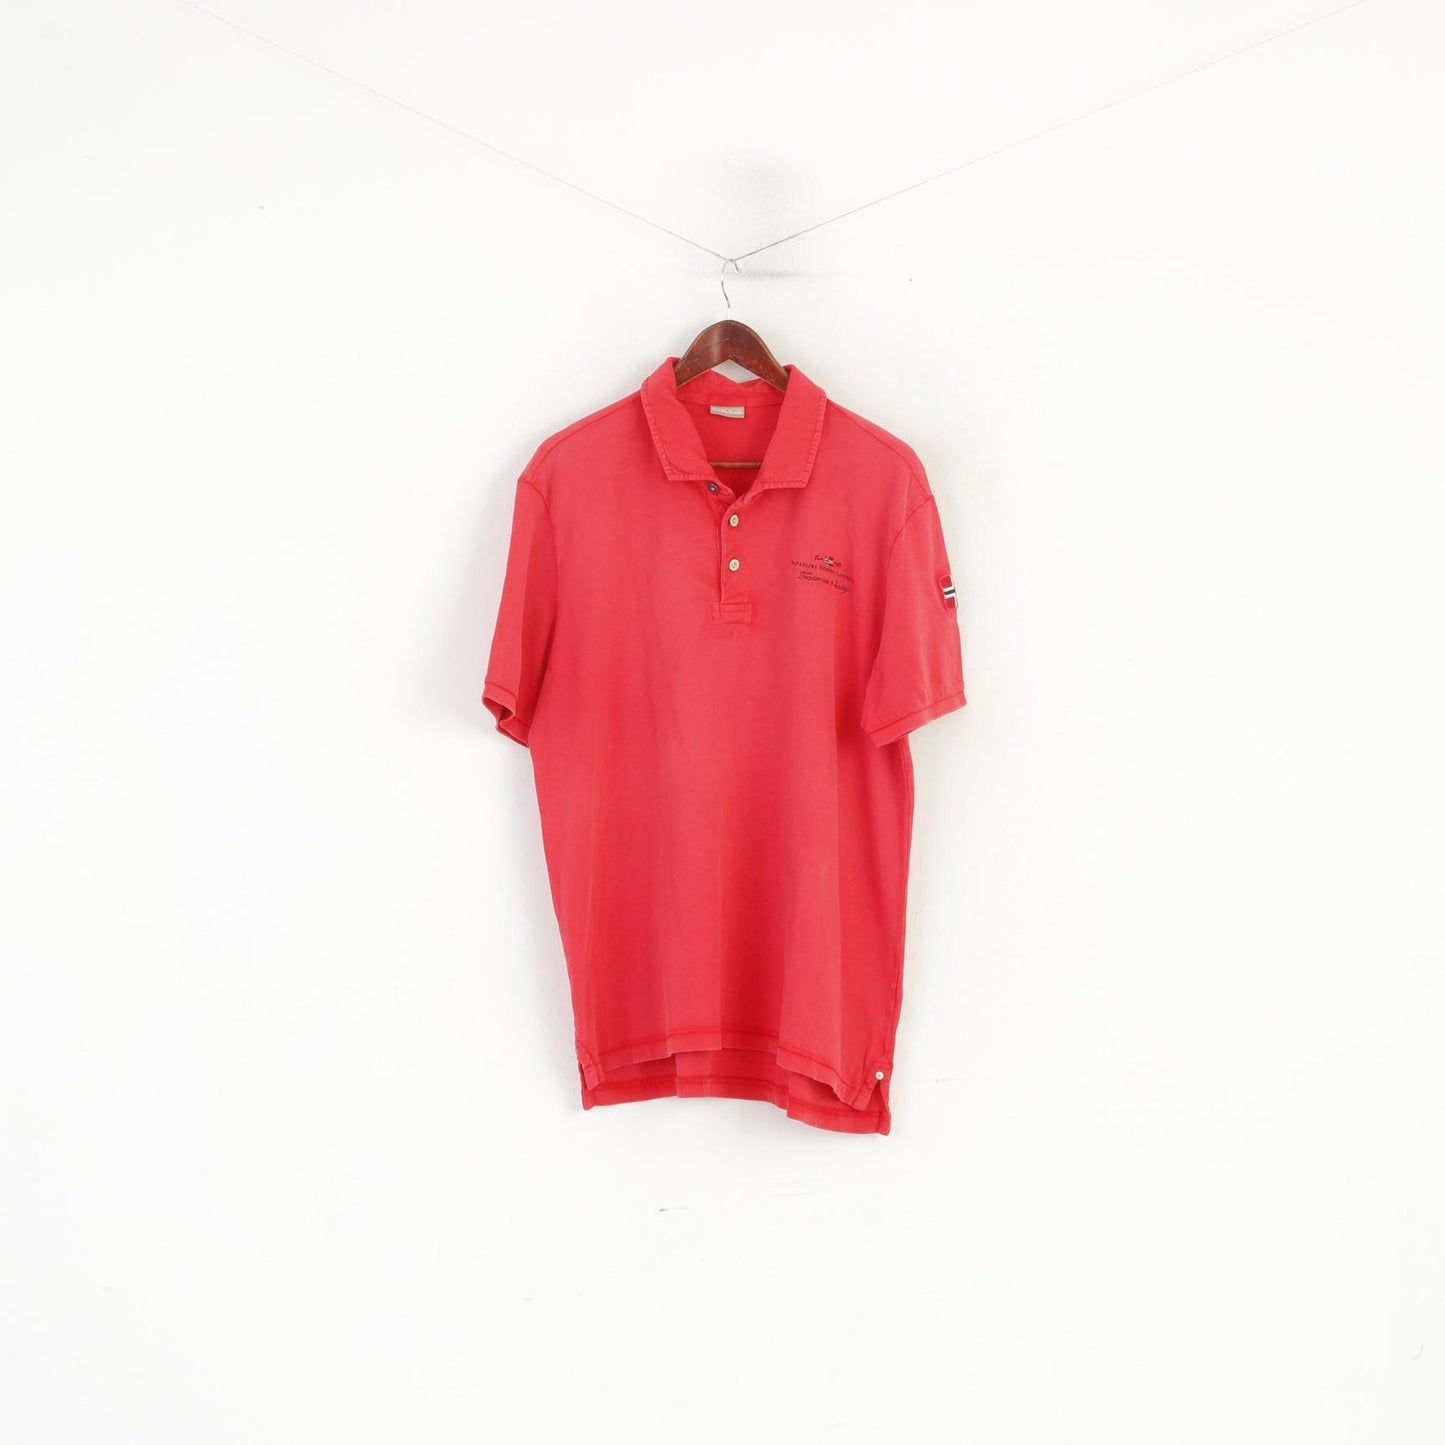 Napapijri Geographic Men XXL Polo Shirt Peach Cotton Detailed Buttons Top